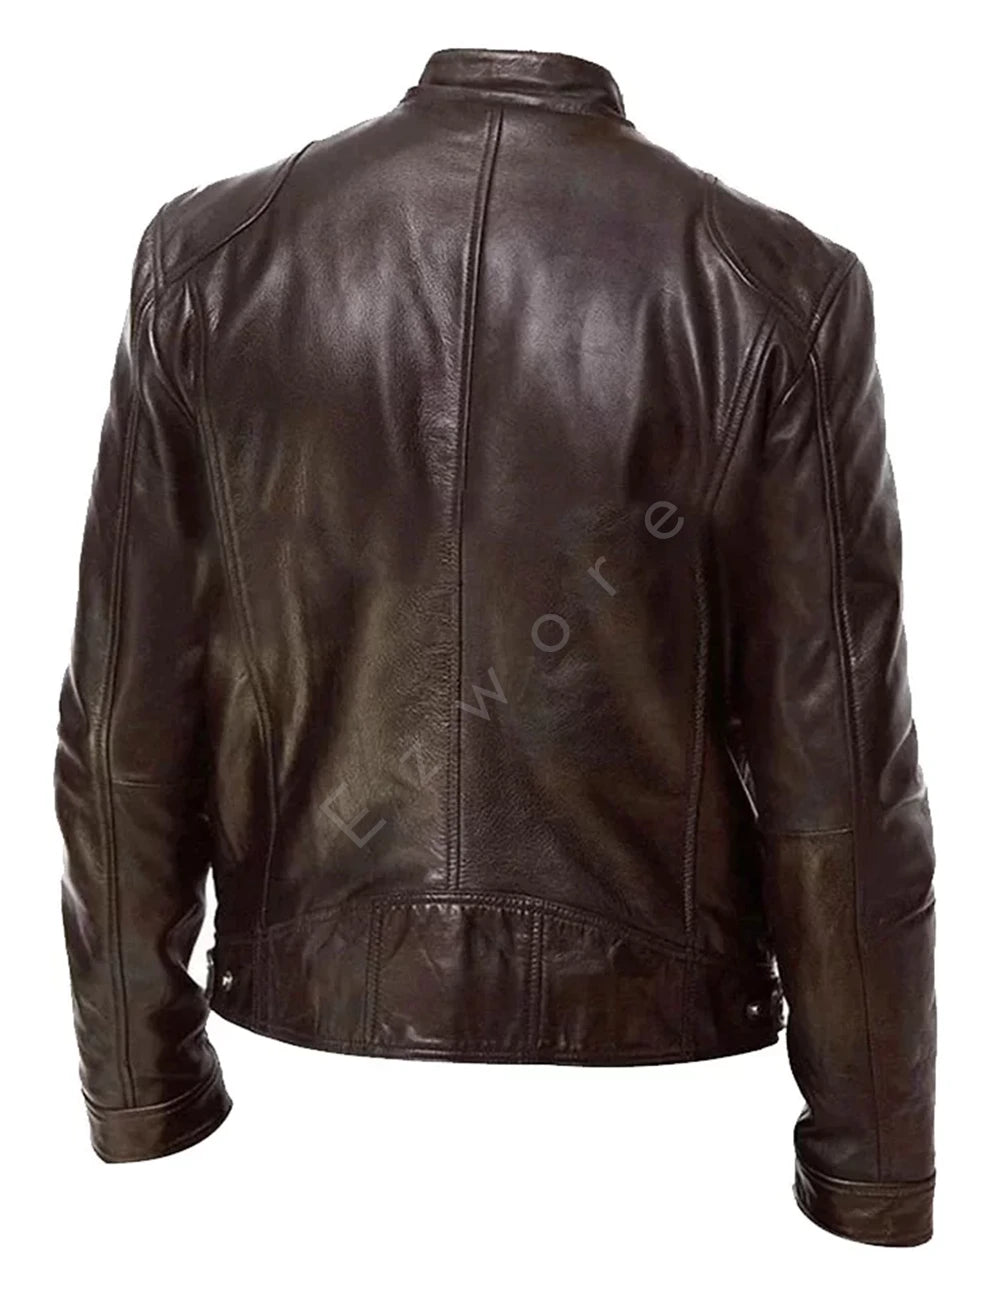 Brown Leather Biker Jacket For Men